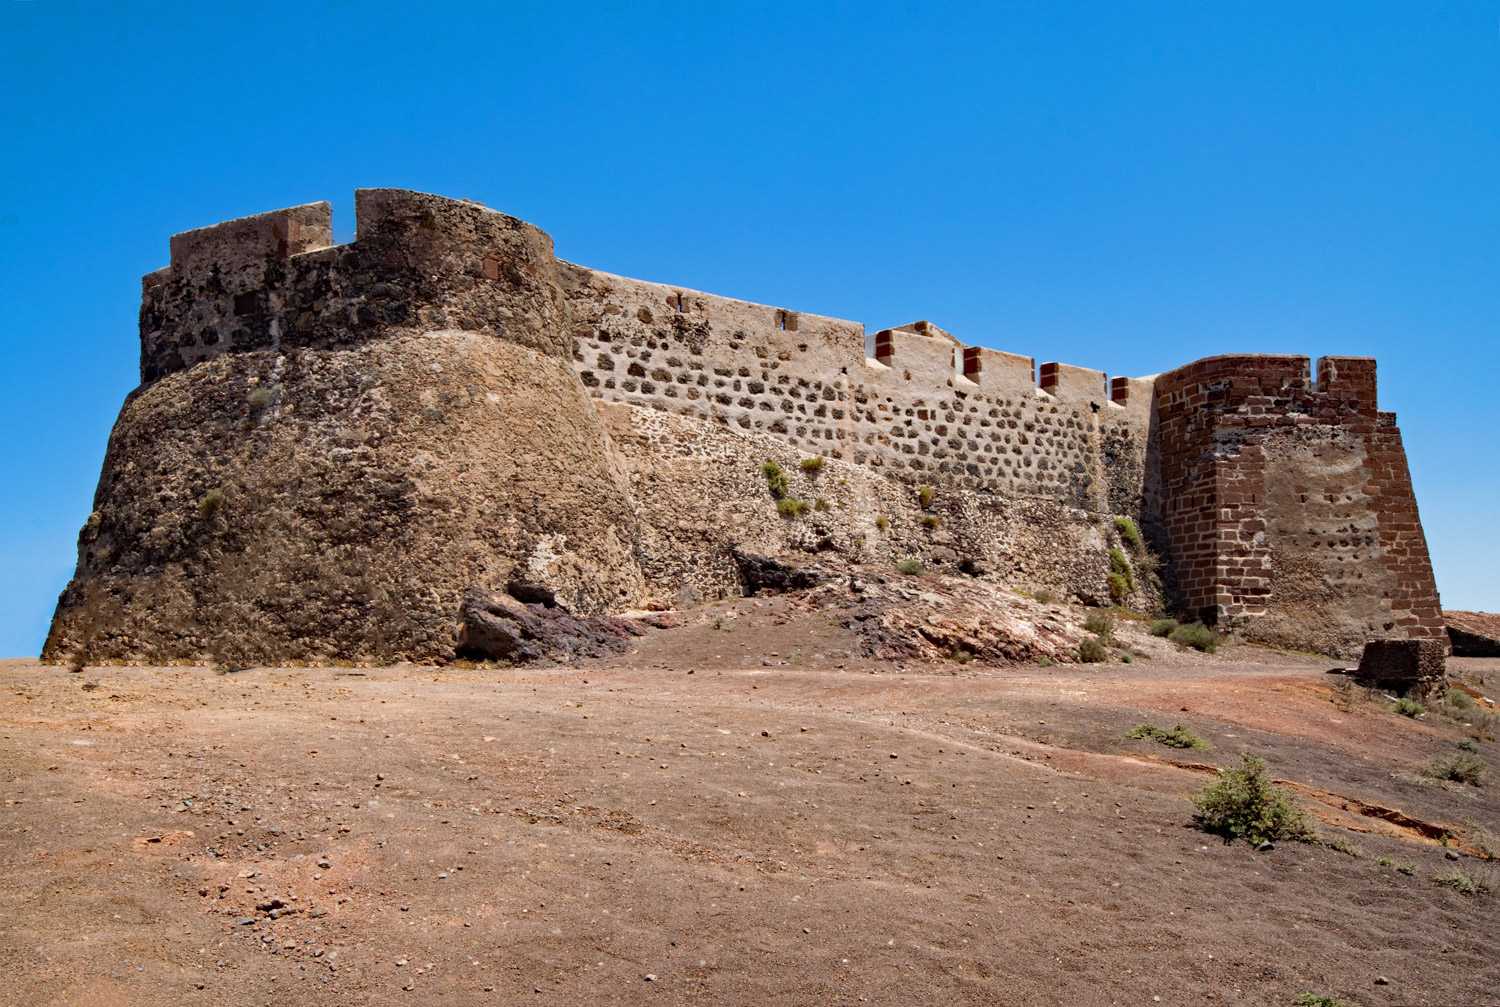 Castillo de Santa Barbara in Lanzarote Photo Lapping on Pixabay